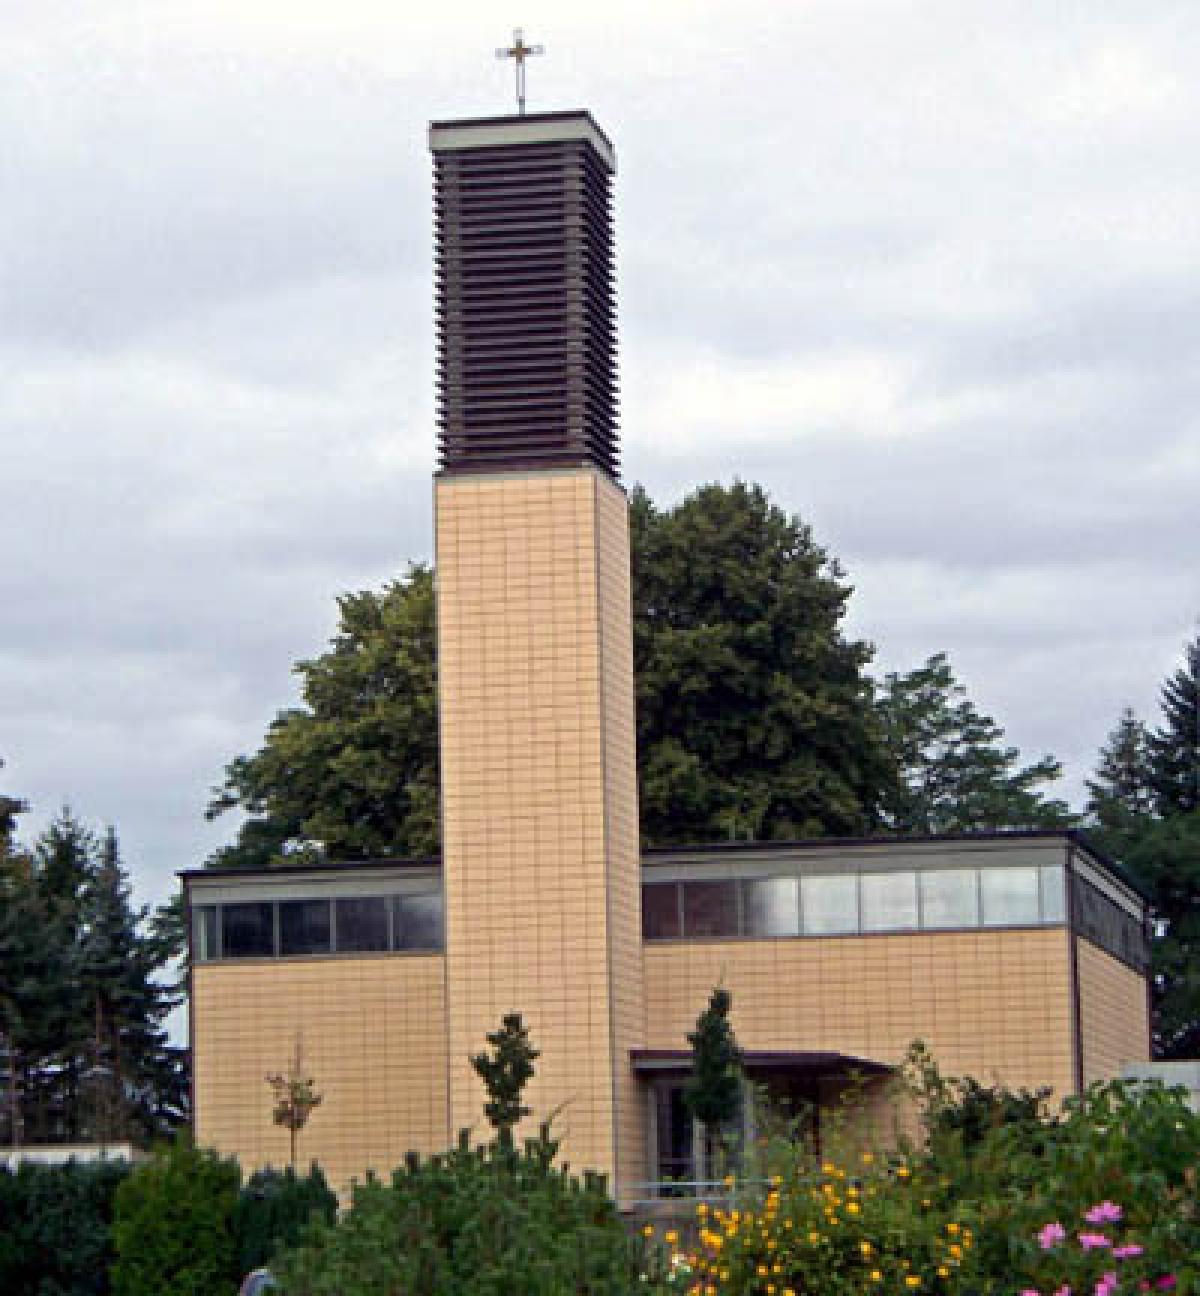 St. Birgitta